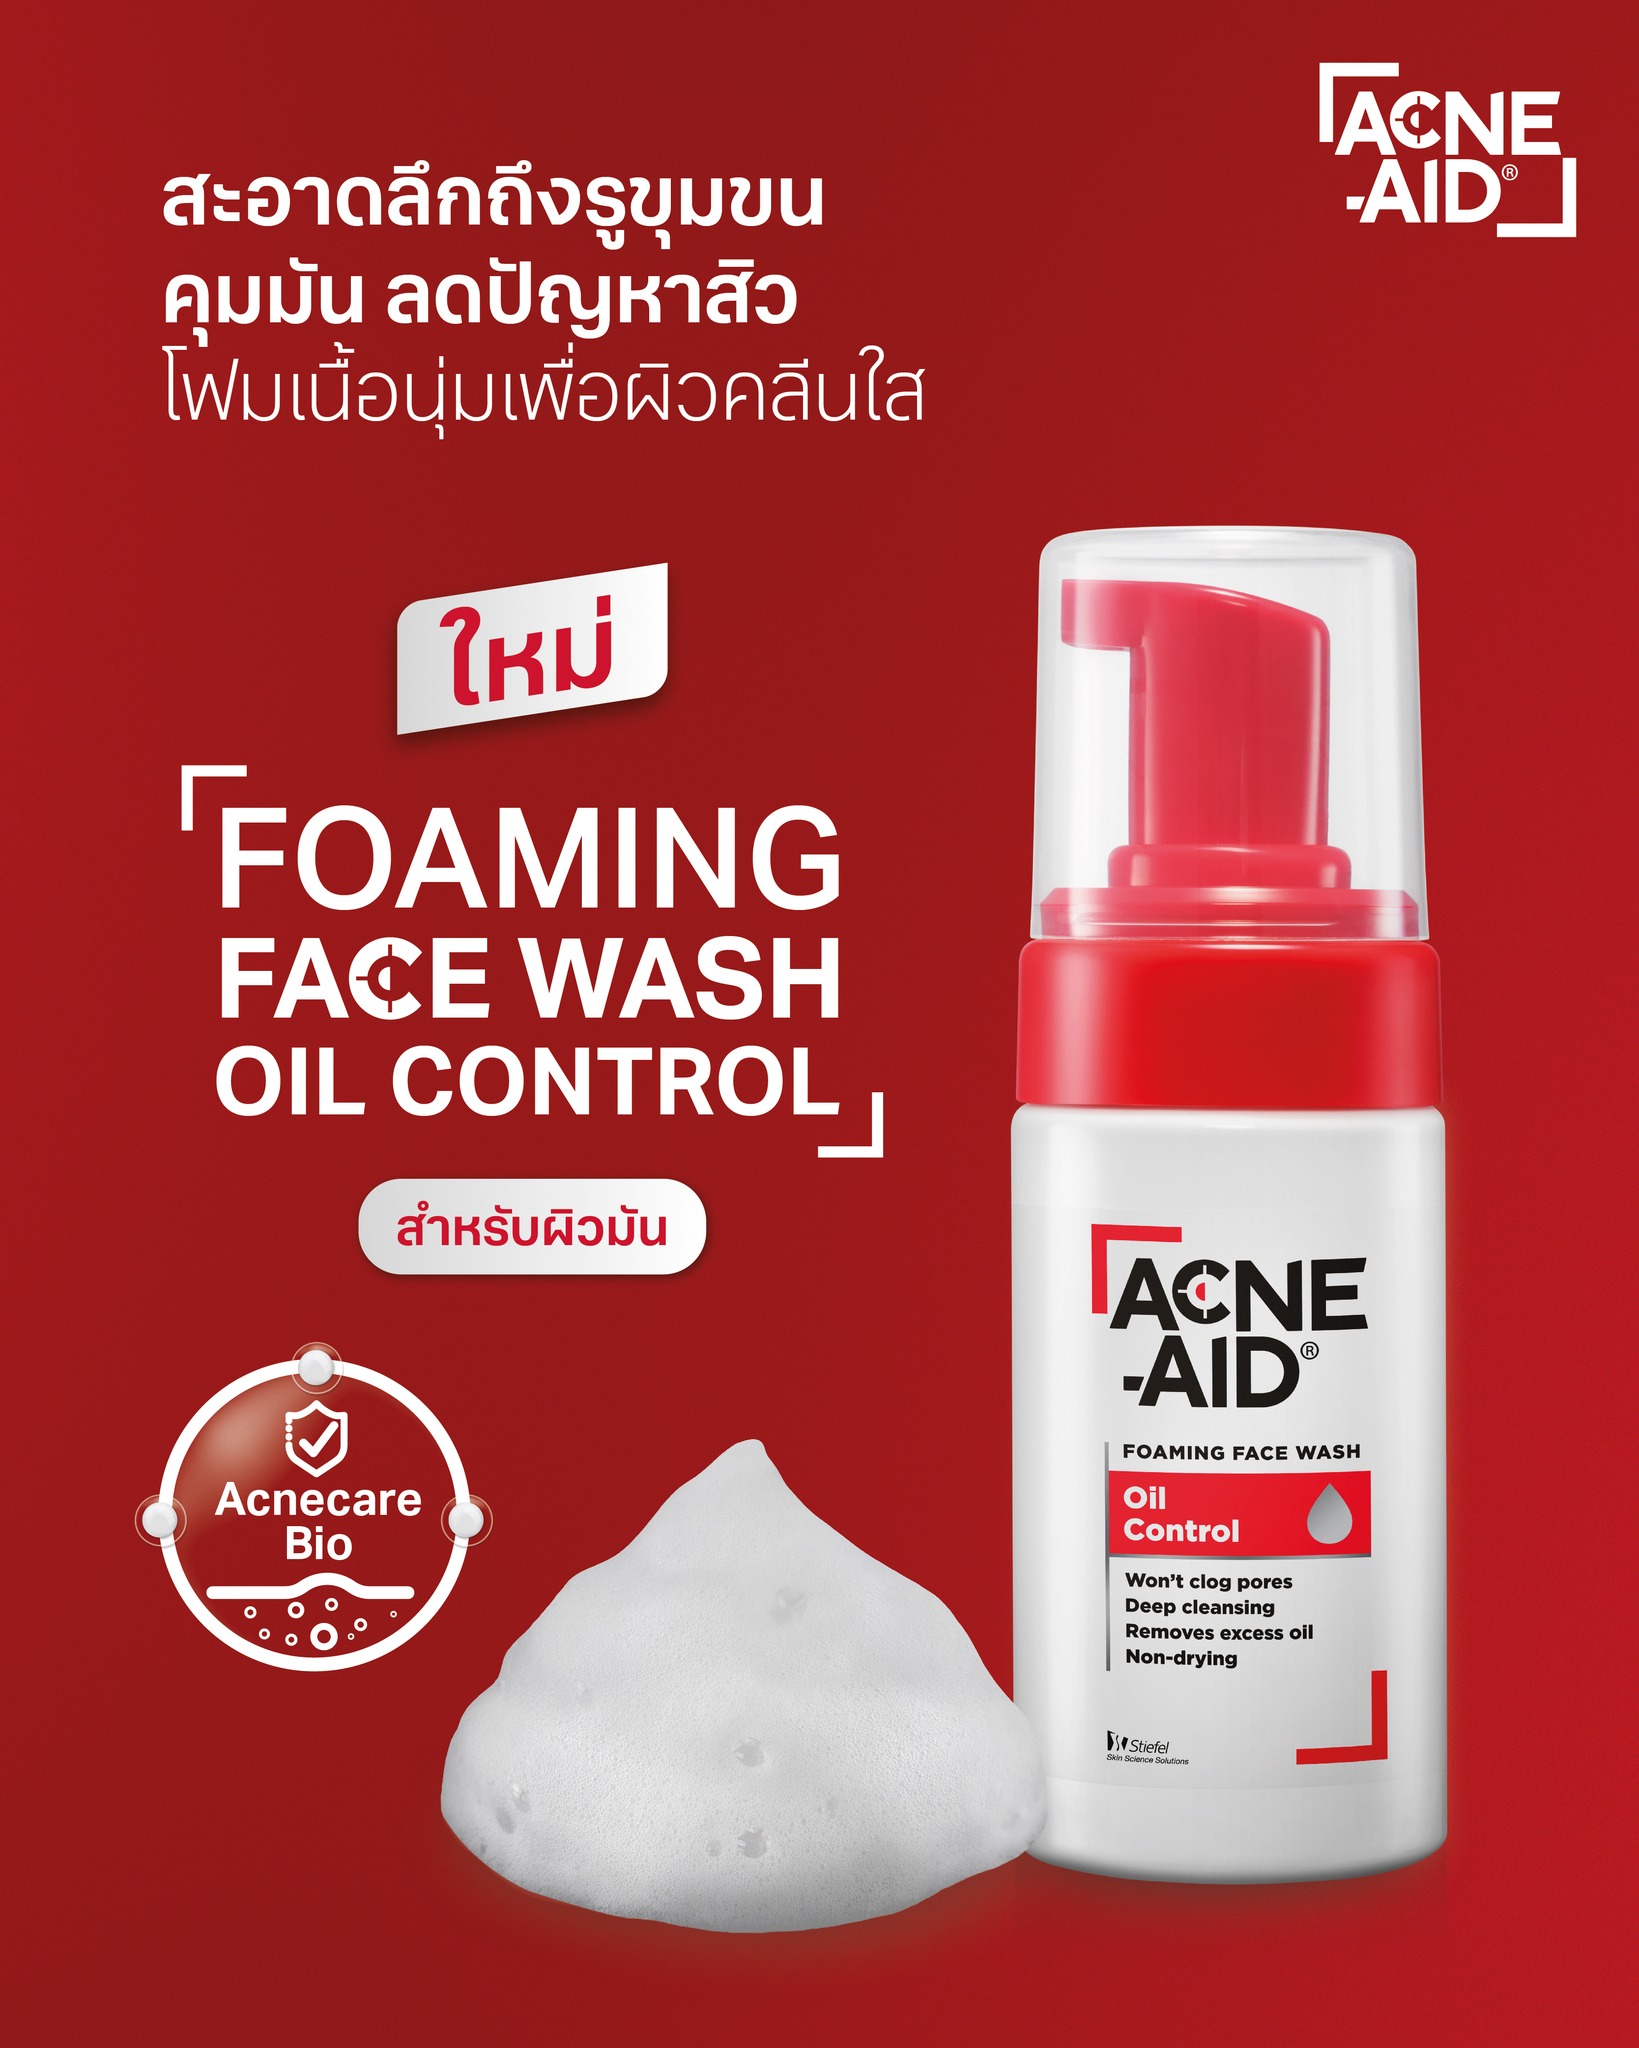 Acne-Aid Oil Control Foam Wash 100 ml